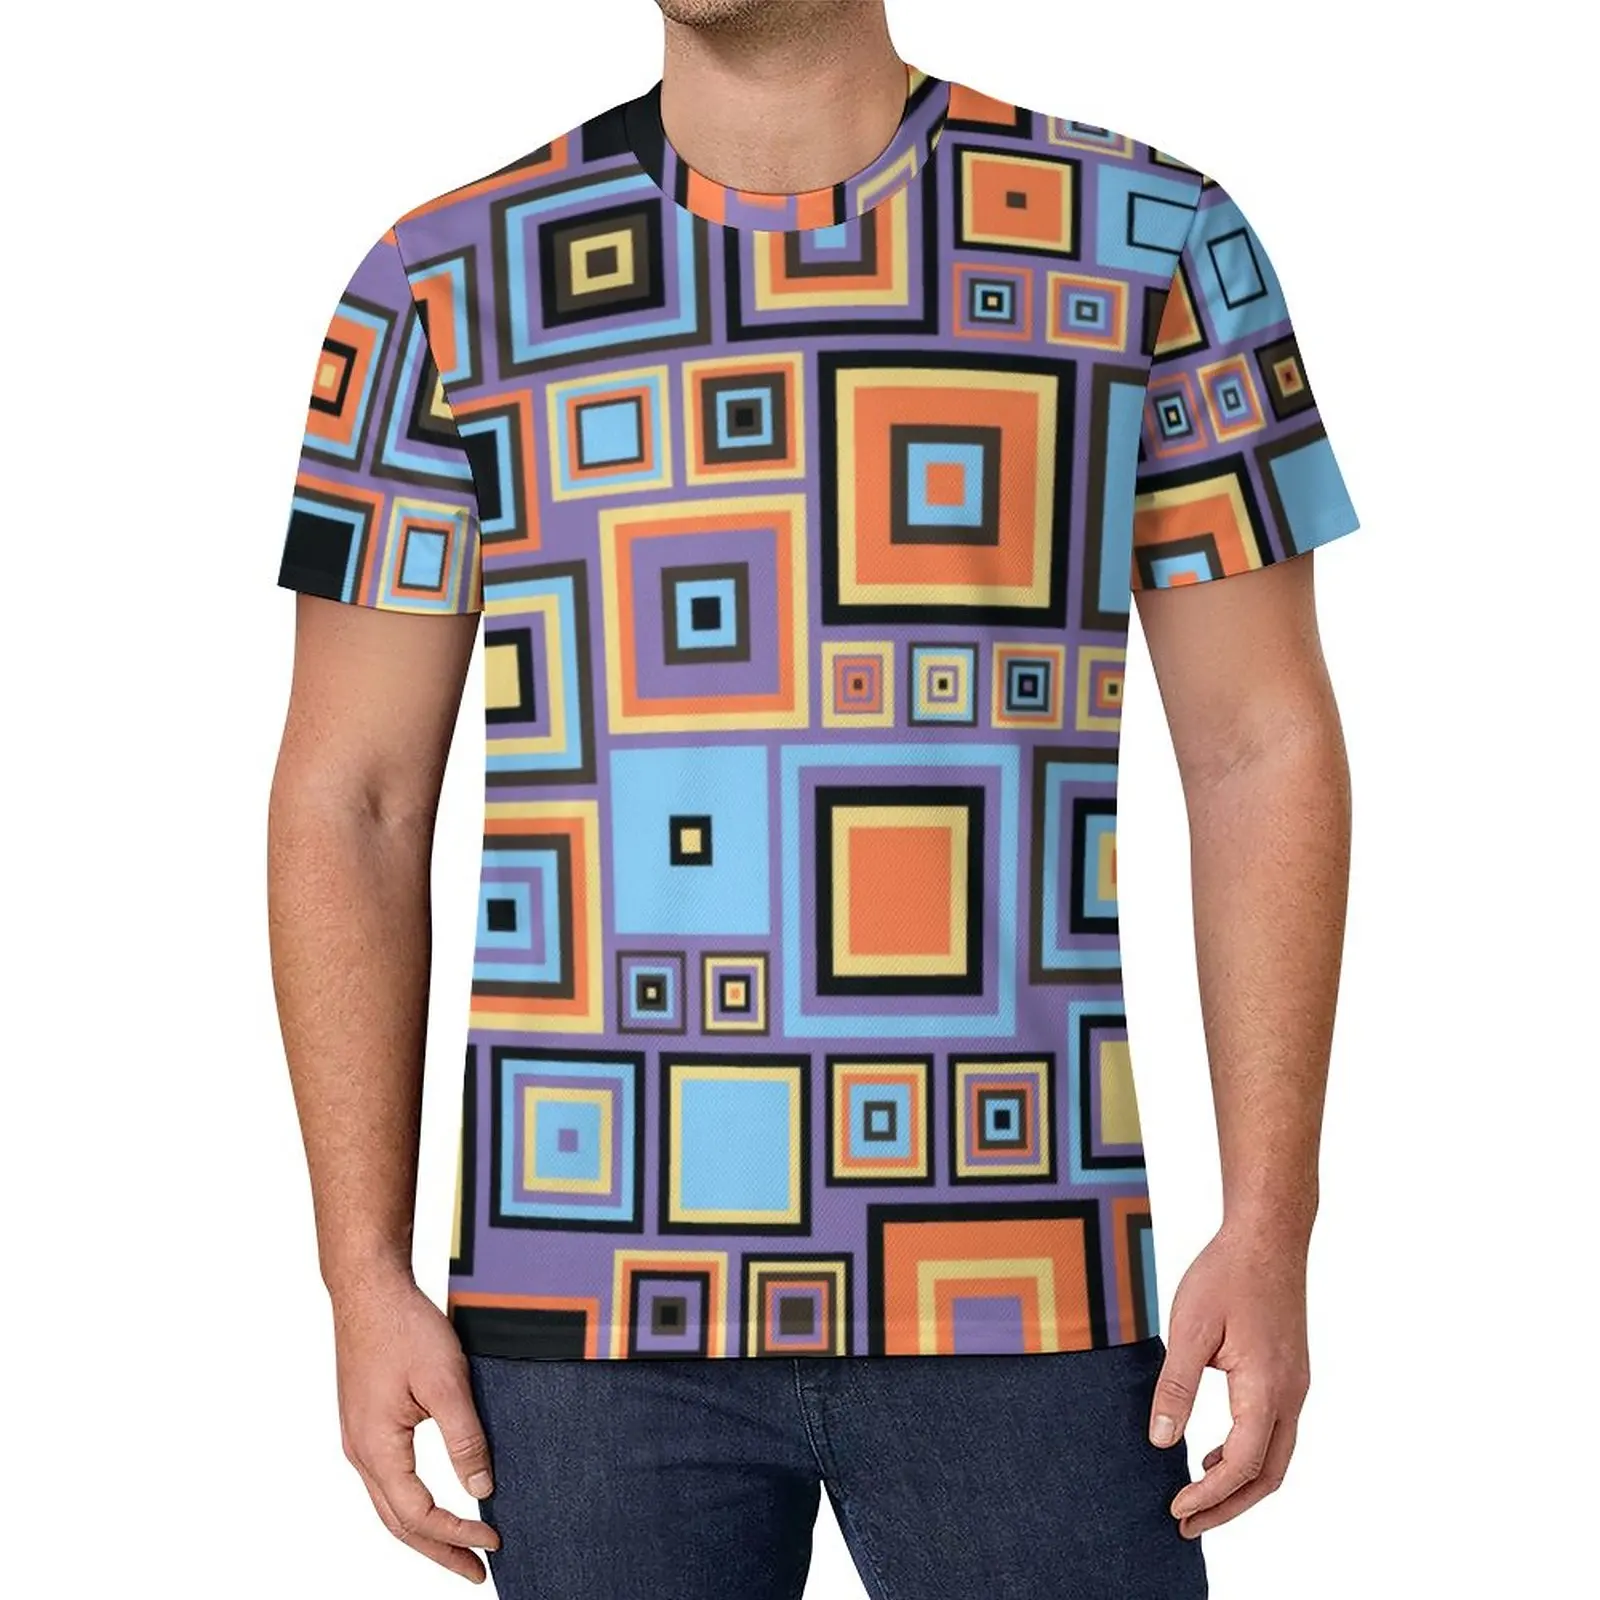 

Цветная ретро-футболка 60-х годов, винтажные популярные футболки с геометрическим рисунком, забавная летняя футболка с коротким рукавом, топ...